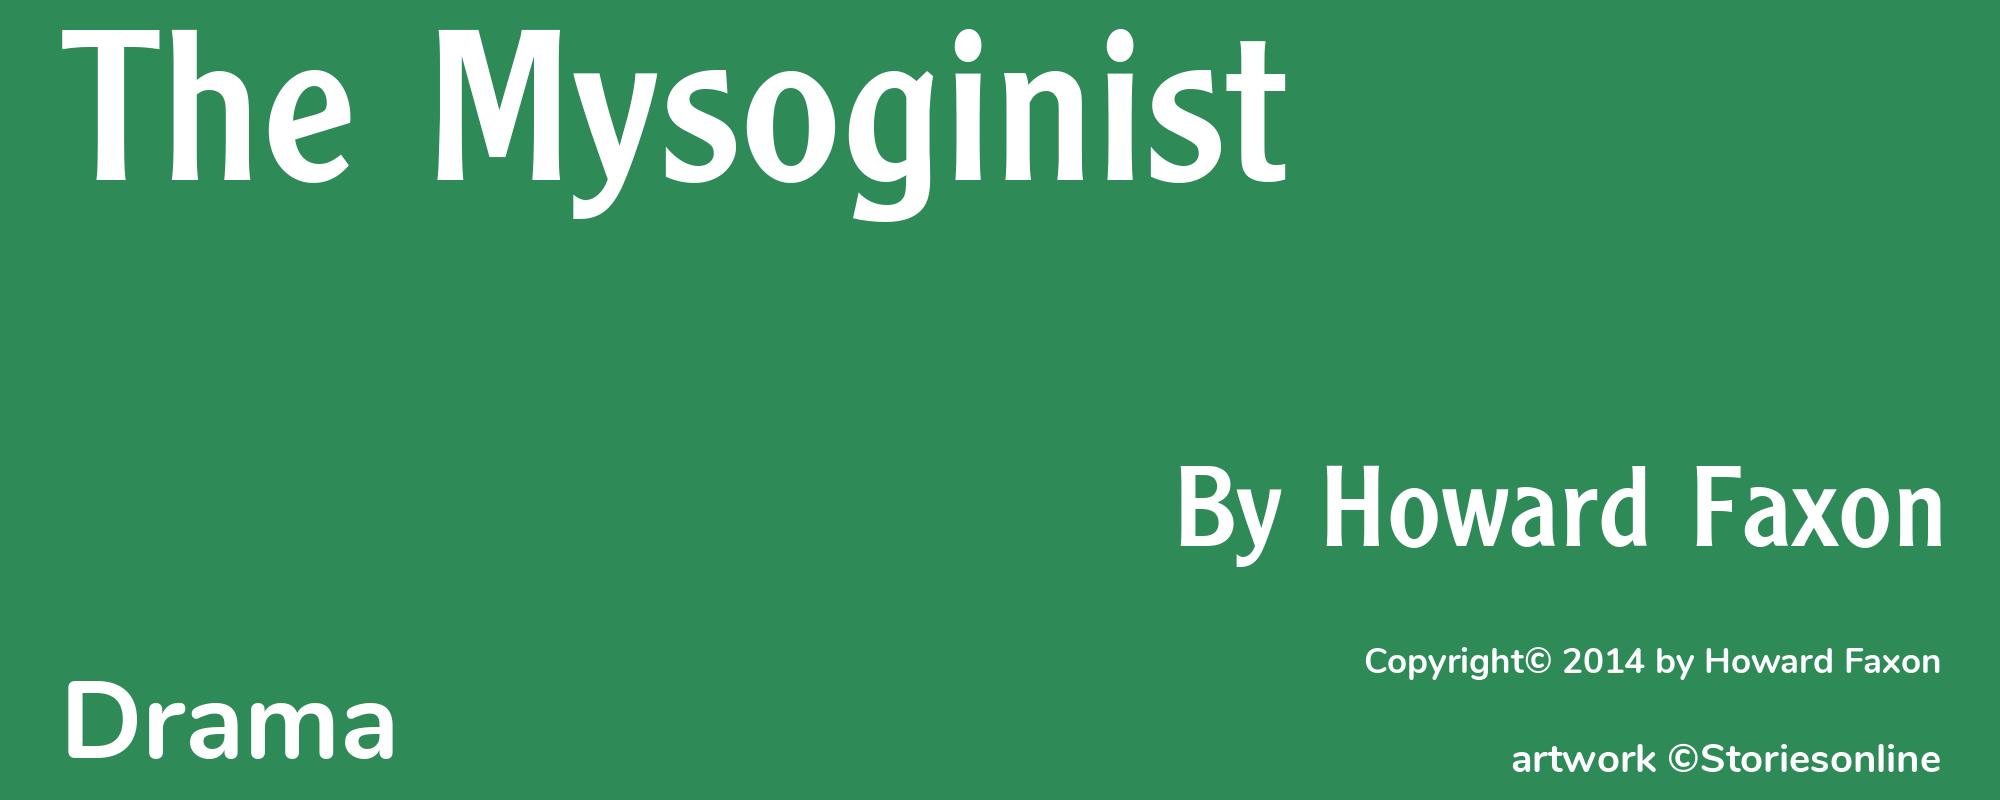 The Mysoginist - Cover